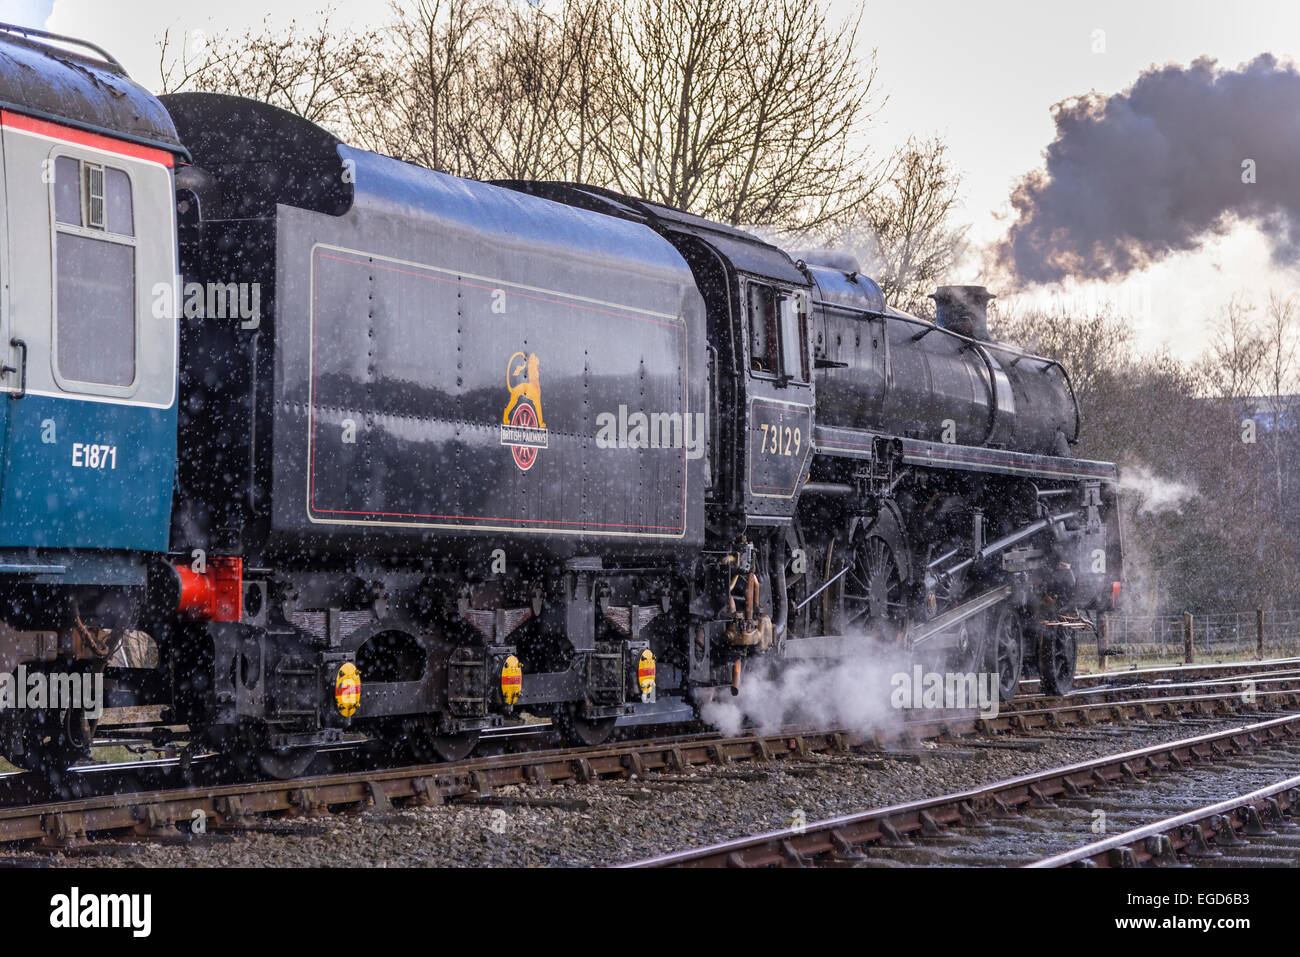 East Lancs gala à vapeur Mar 2015. British Railways Standard Class 5 n°73129 préservé est une locomotive à vapeur britannique. Il Banque D'Images